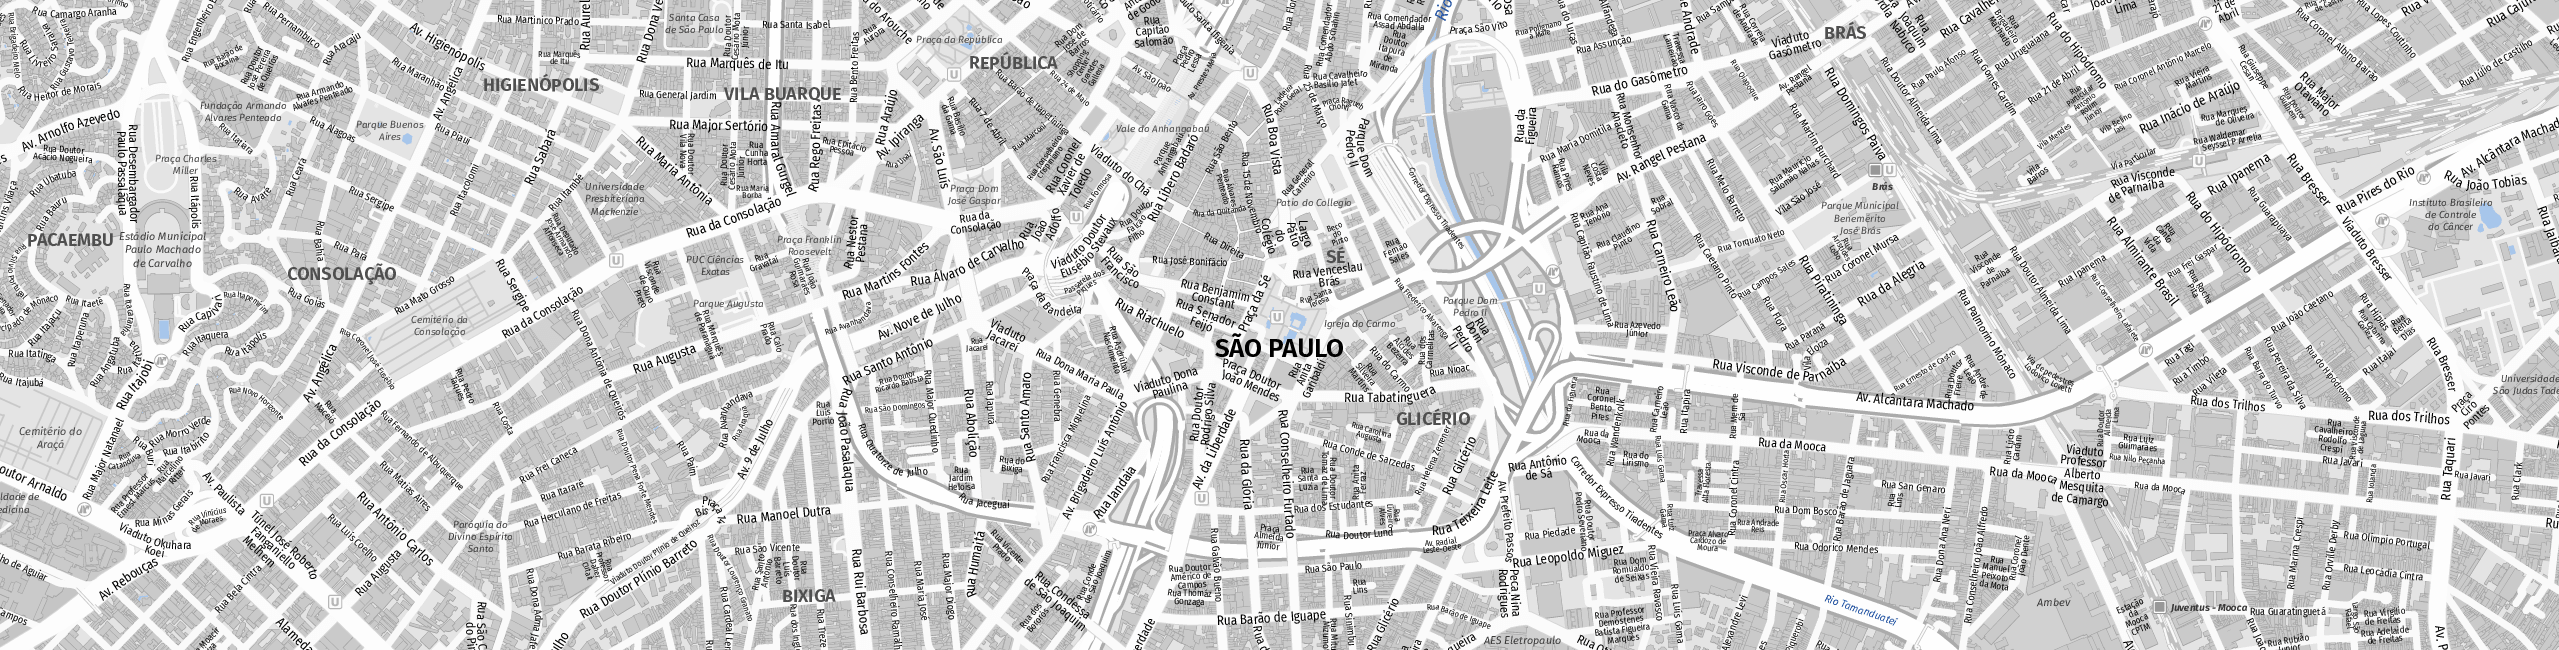 Stadtplan São Paulo zum Downloaden.